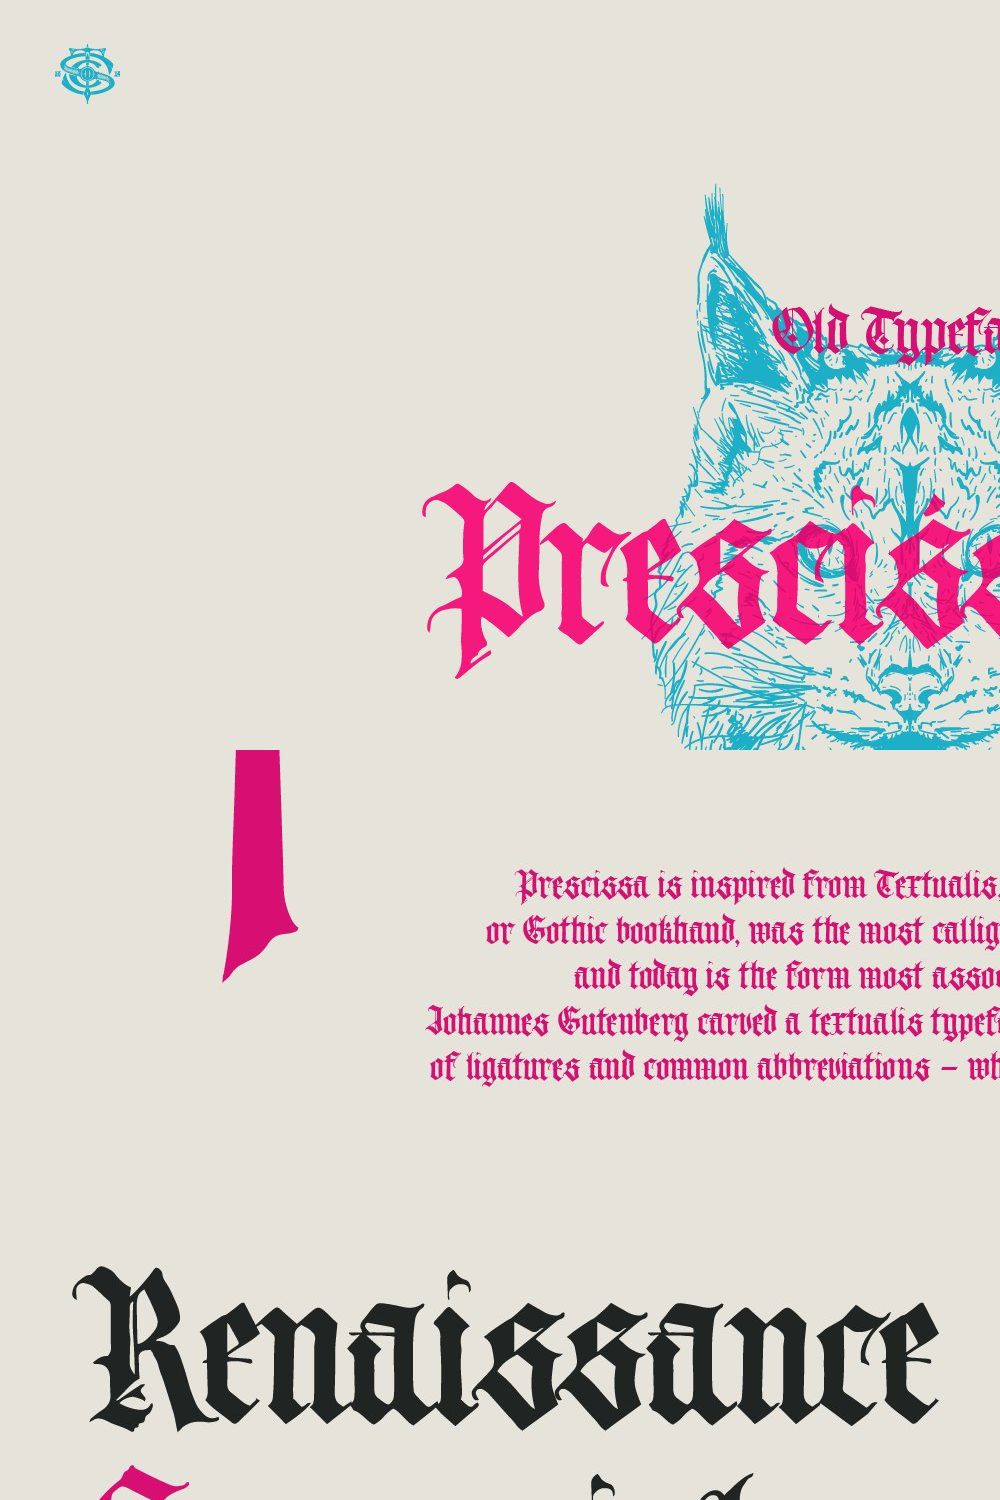 Prescissa Blackletter Typeface pinterest preview image.